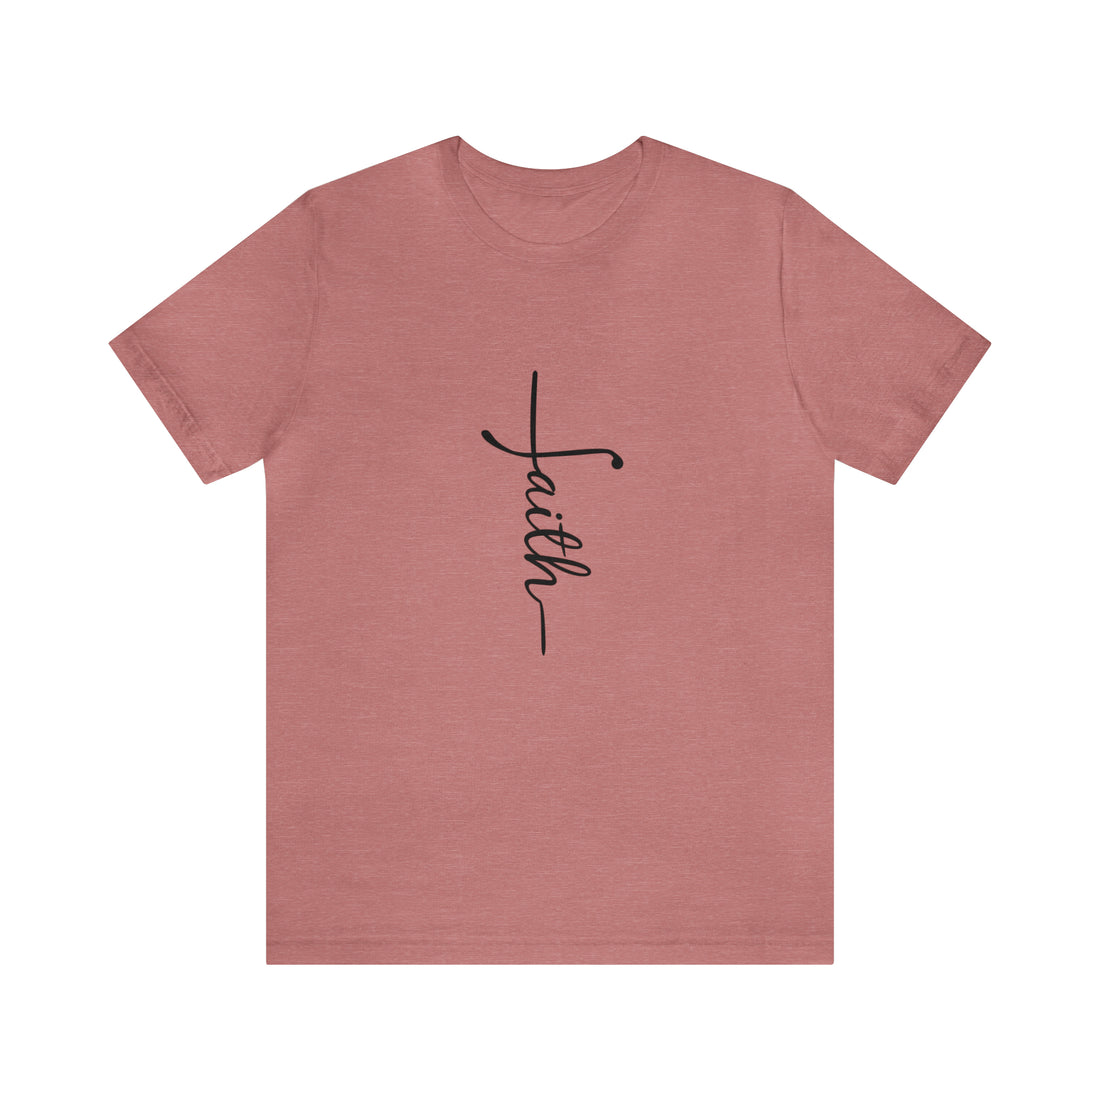 Faith Tshirt, Faith Tee, Faith T-shirt, Christain t-shirt, Christain merch, Catholic tshirt